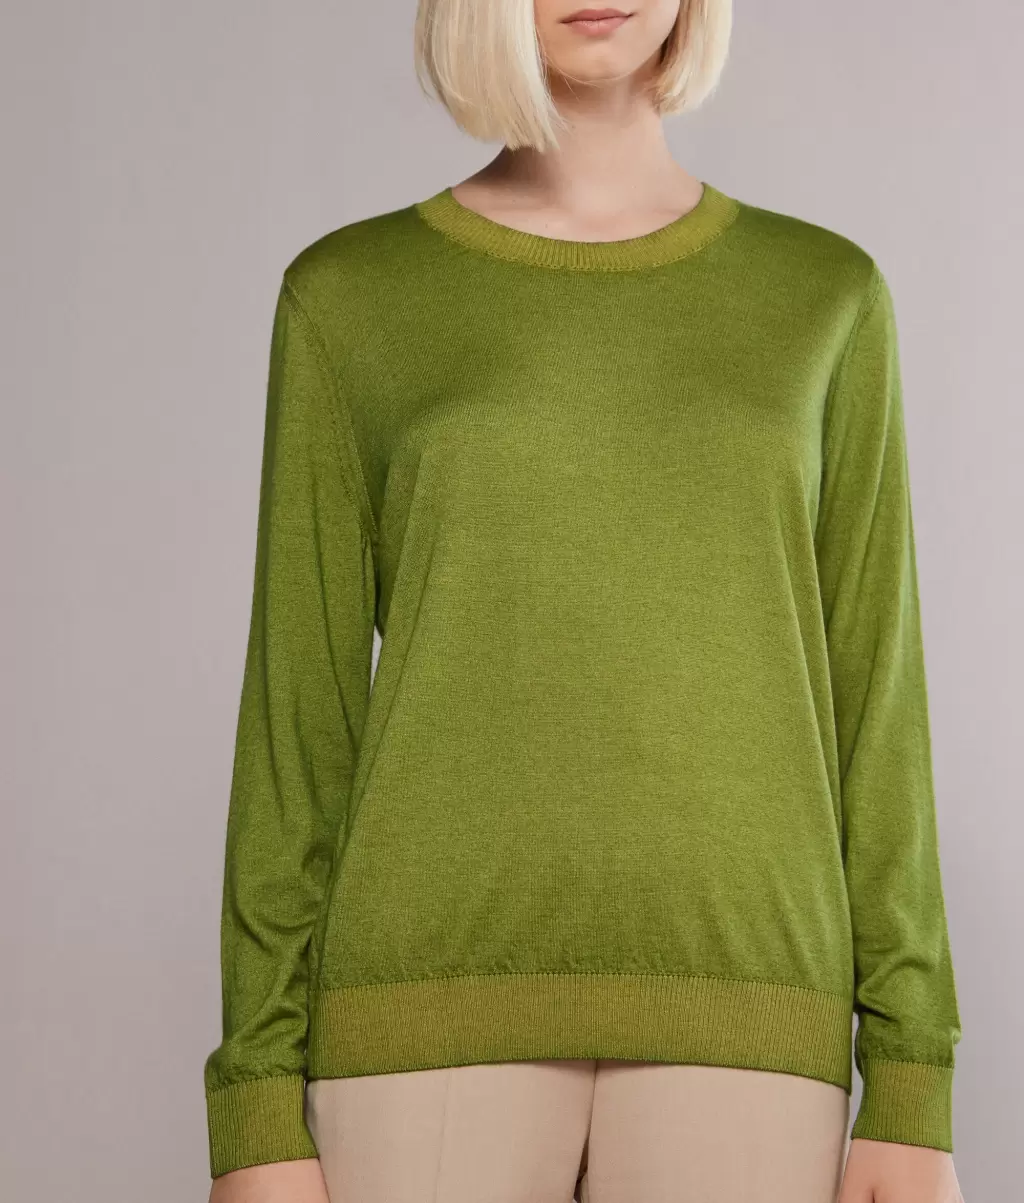 Swetry Z Okrągłym Dekoltem Kobieta Pulower Z Kaszmiru Ultrafine Green Falconeri - 1